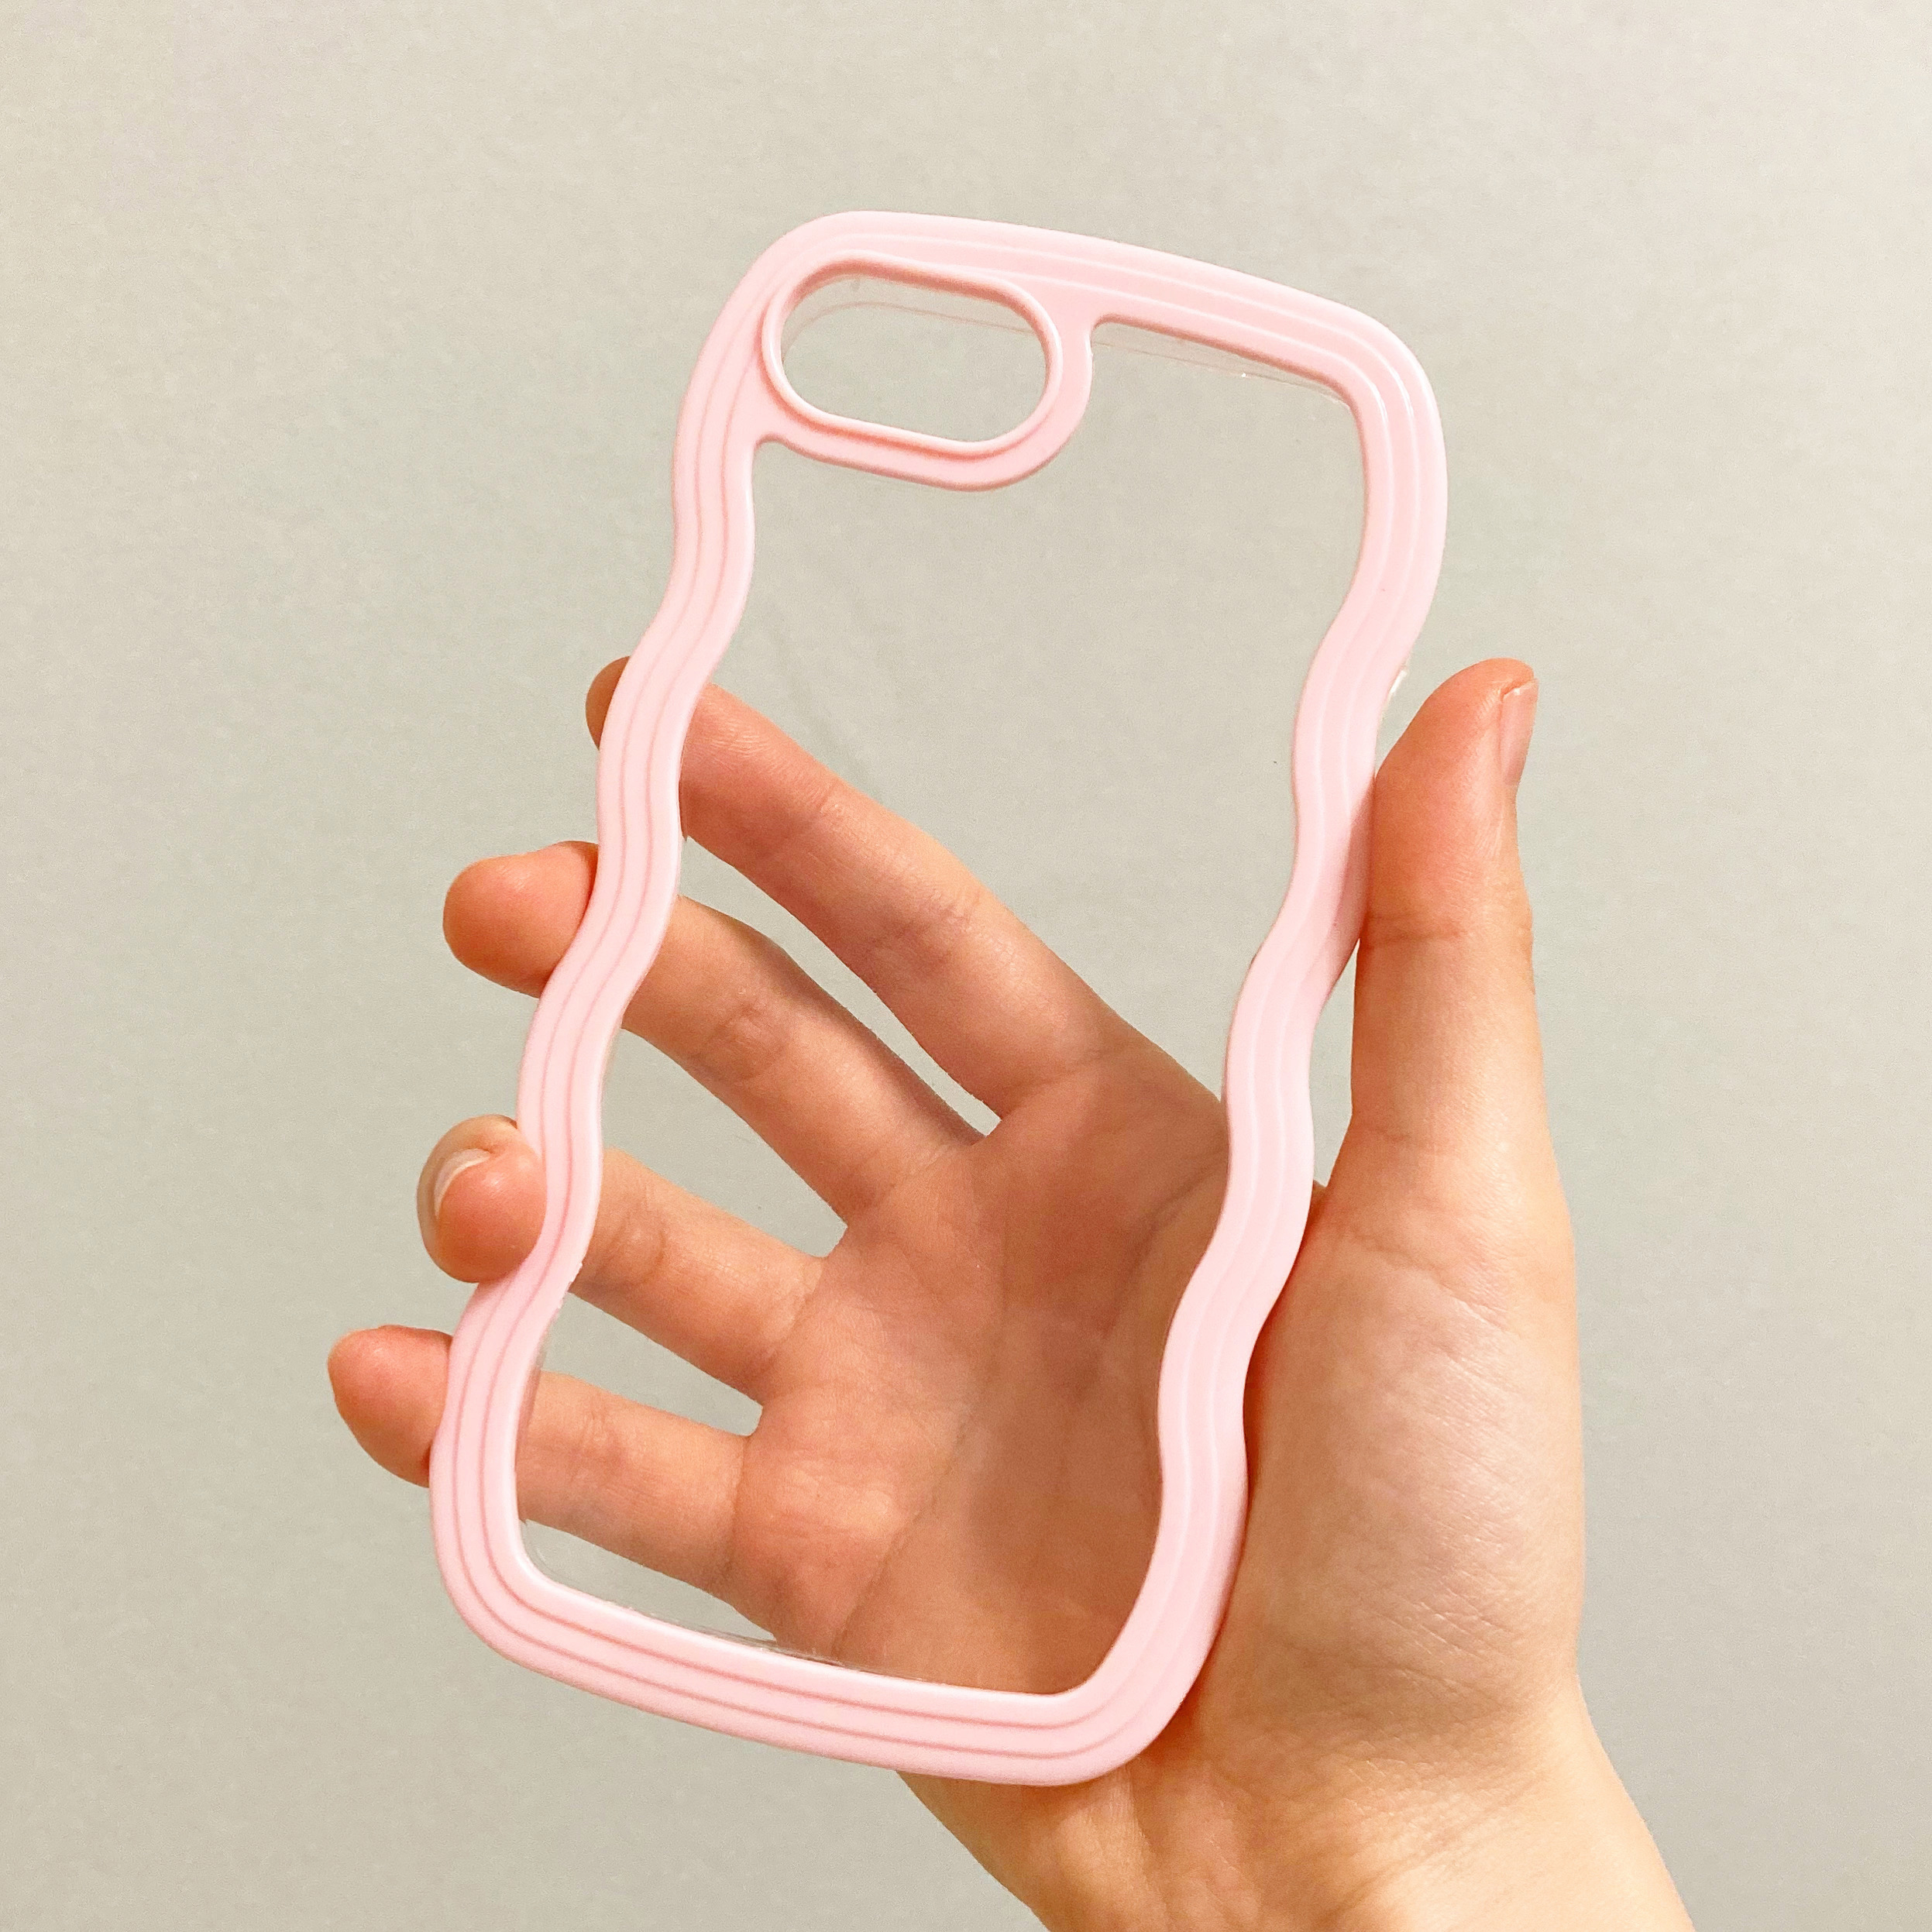 CanDo（キャンドゥ）のおしゃれiPhoneケース「なみなみケース ピンク」